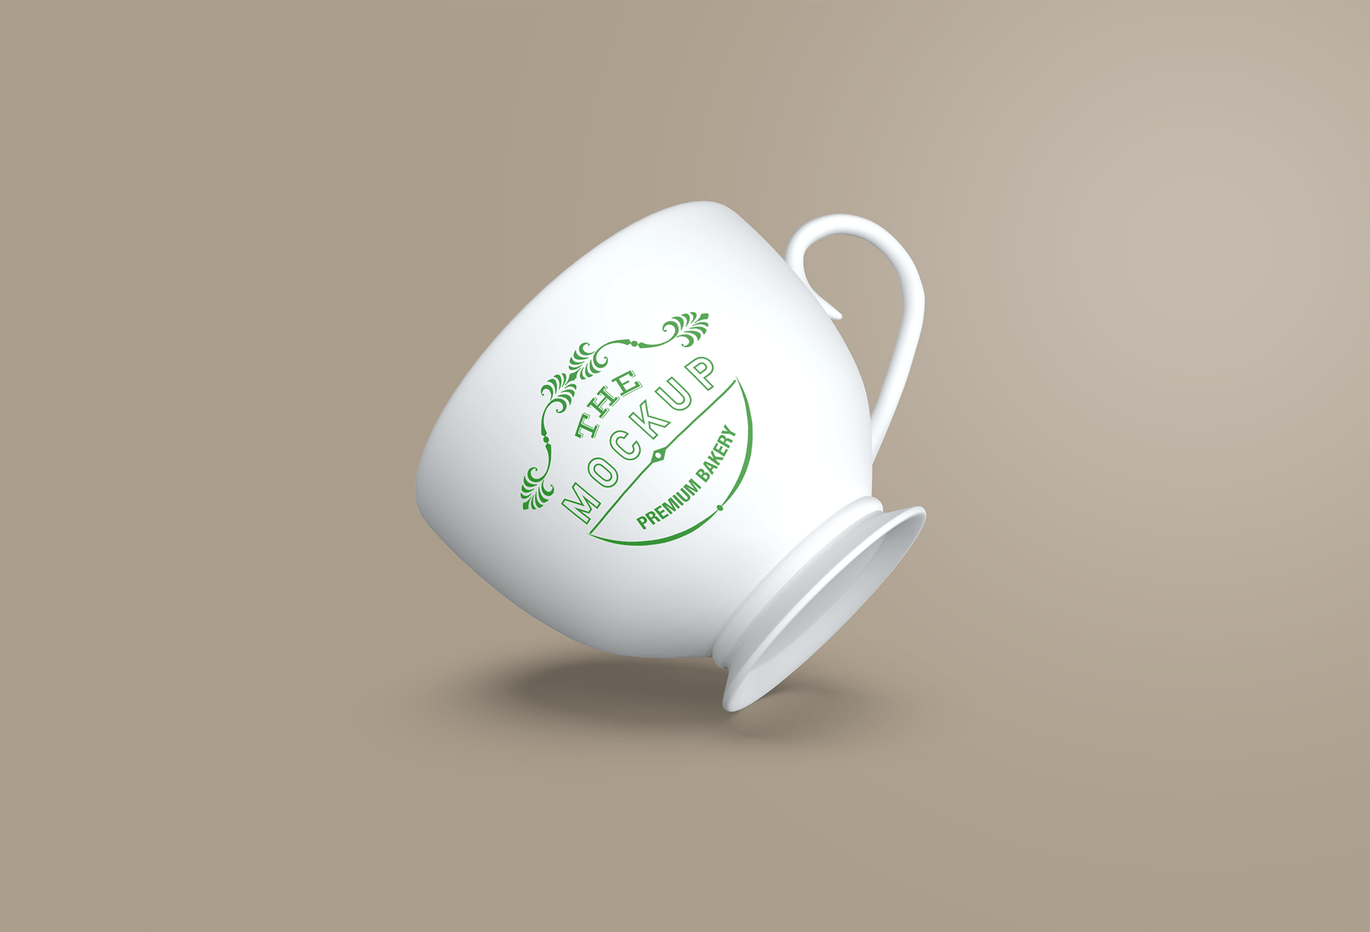 陶瓷茶杯咖啡杯外观设计样机模板v2 Cup Mockup 2.0插图(3)